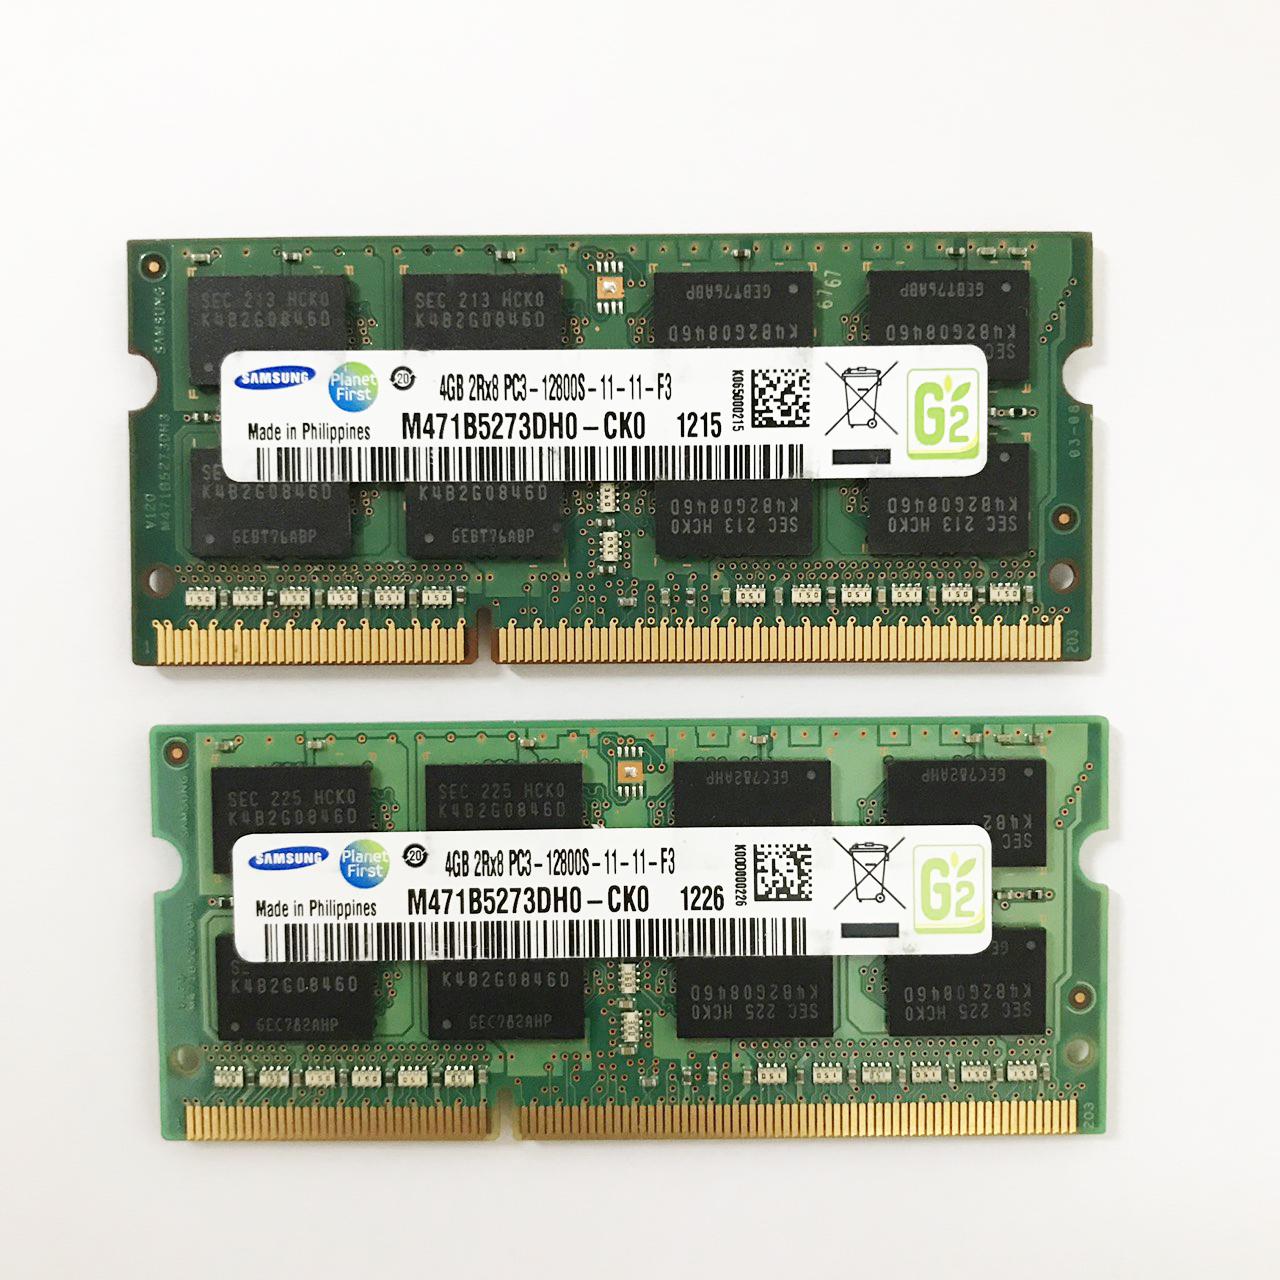 Ram laptop DDR3 4GB Bus 1600 ( nhiều hãng) Samsung / Hynix/ micron/ crucial... PC3-12800S - LTR3 4GB